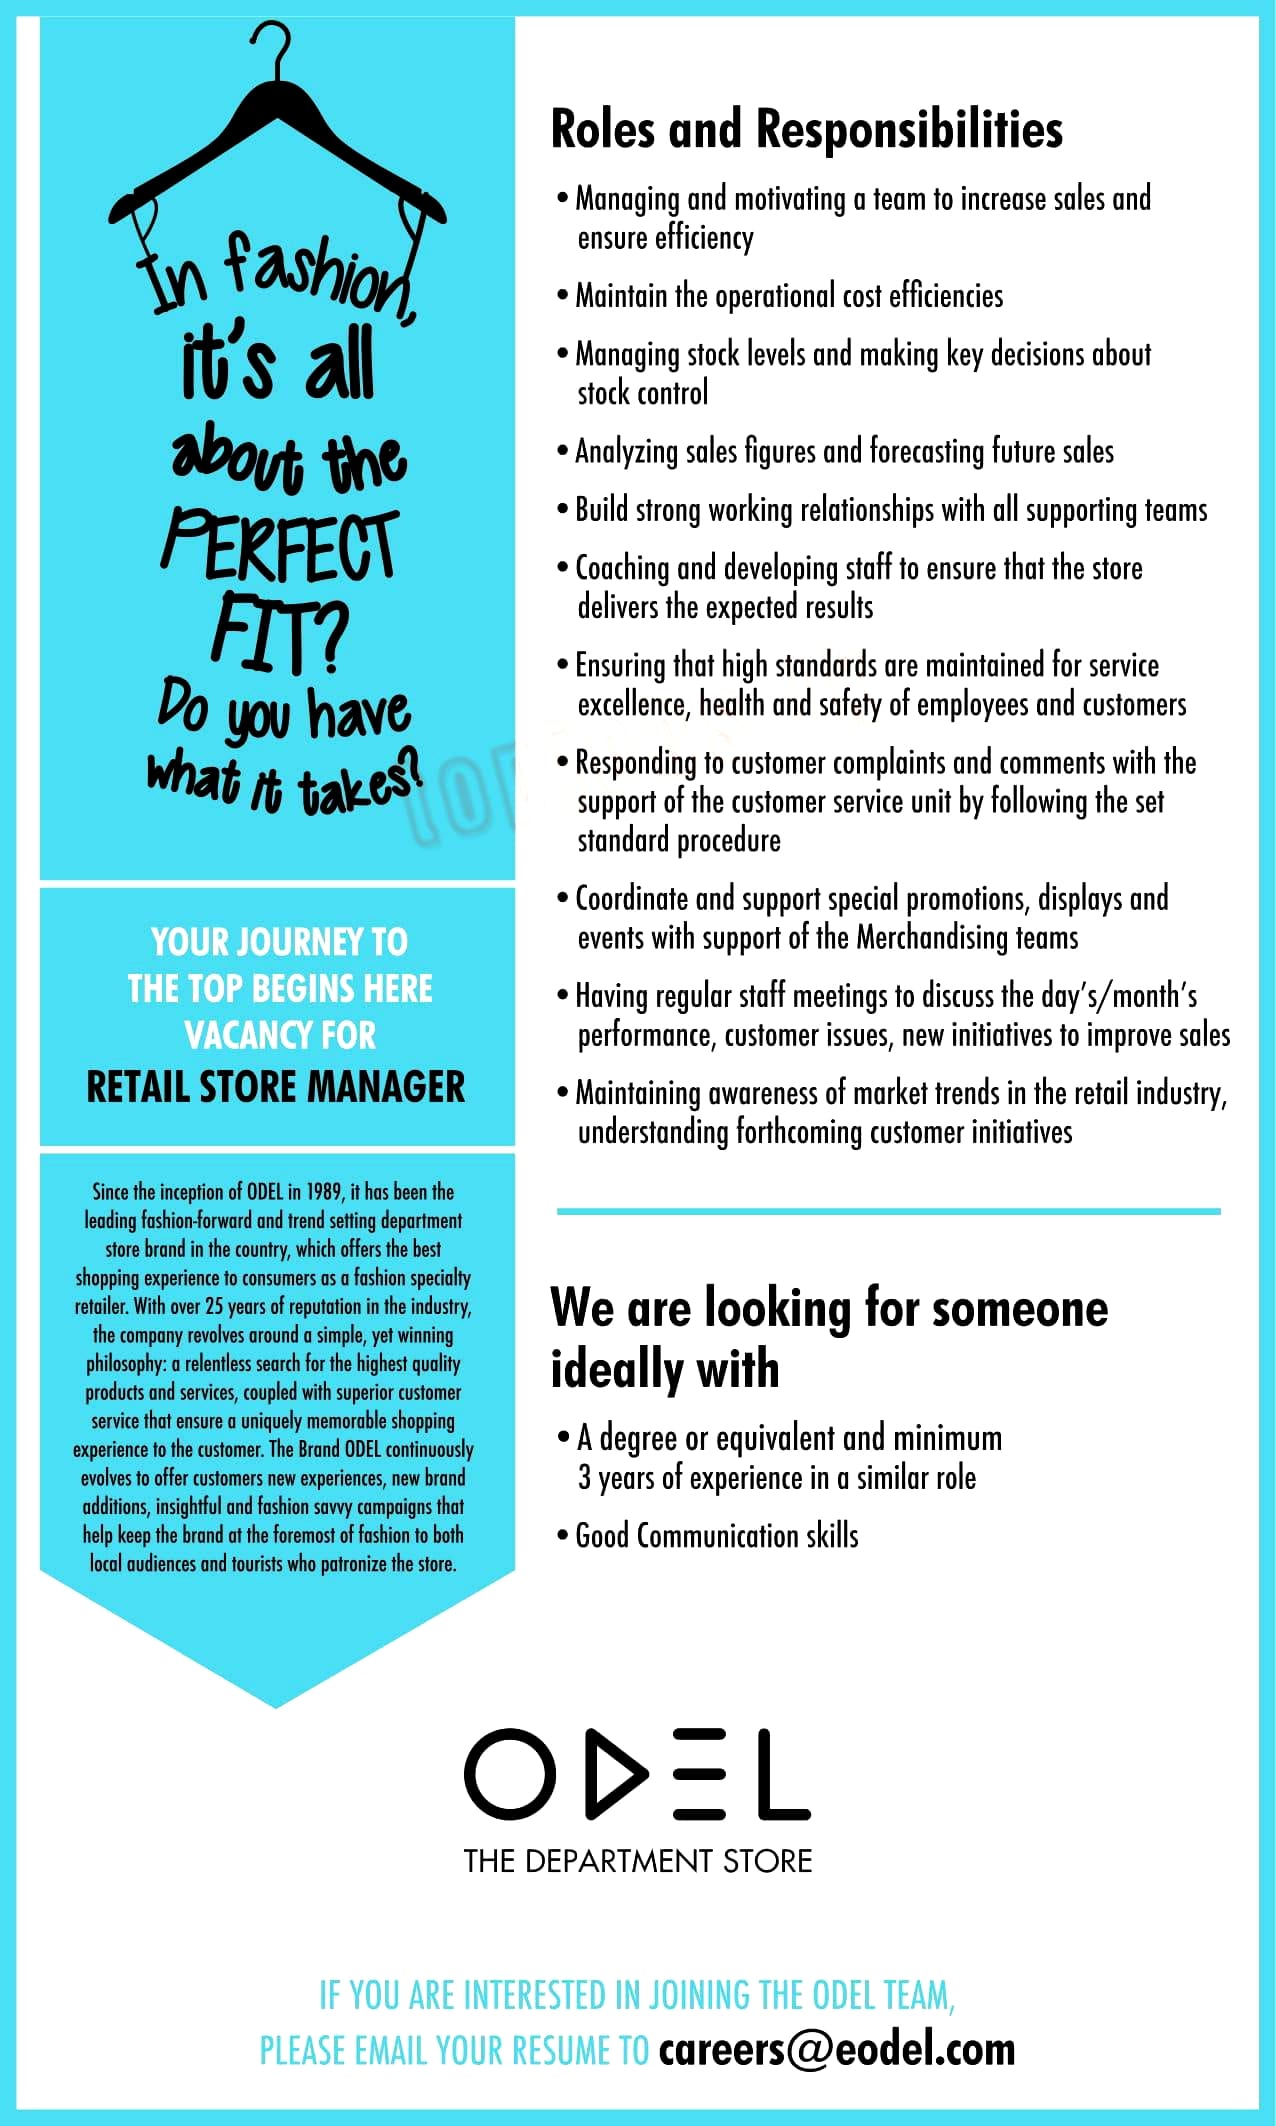 Retail Store Manager Job Vacancy in ODEL PLC Jobs Vacancies